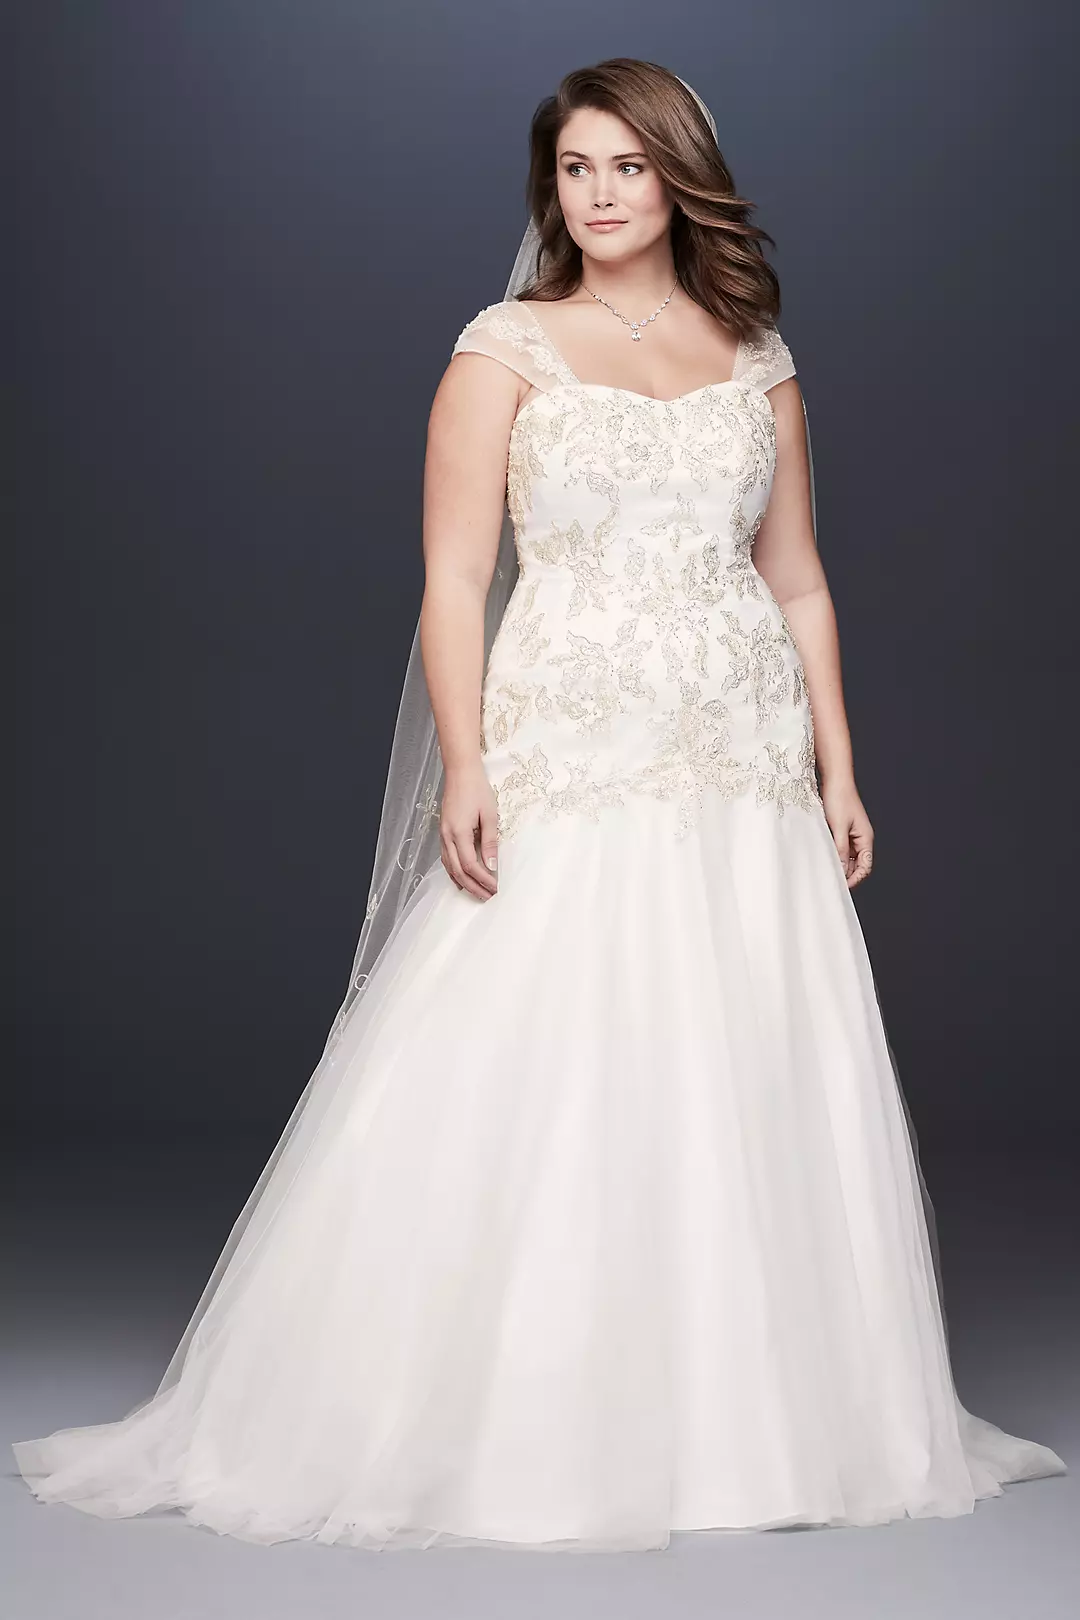 Metallic Lace Applique Plus Size Wedding Dress Image